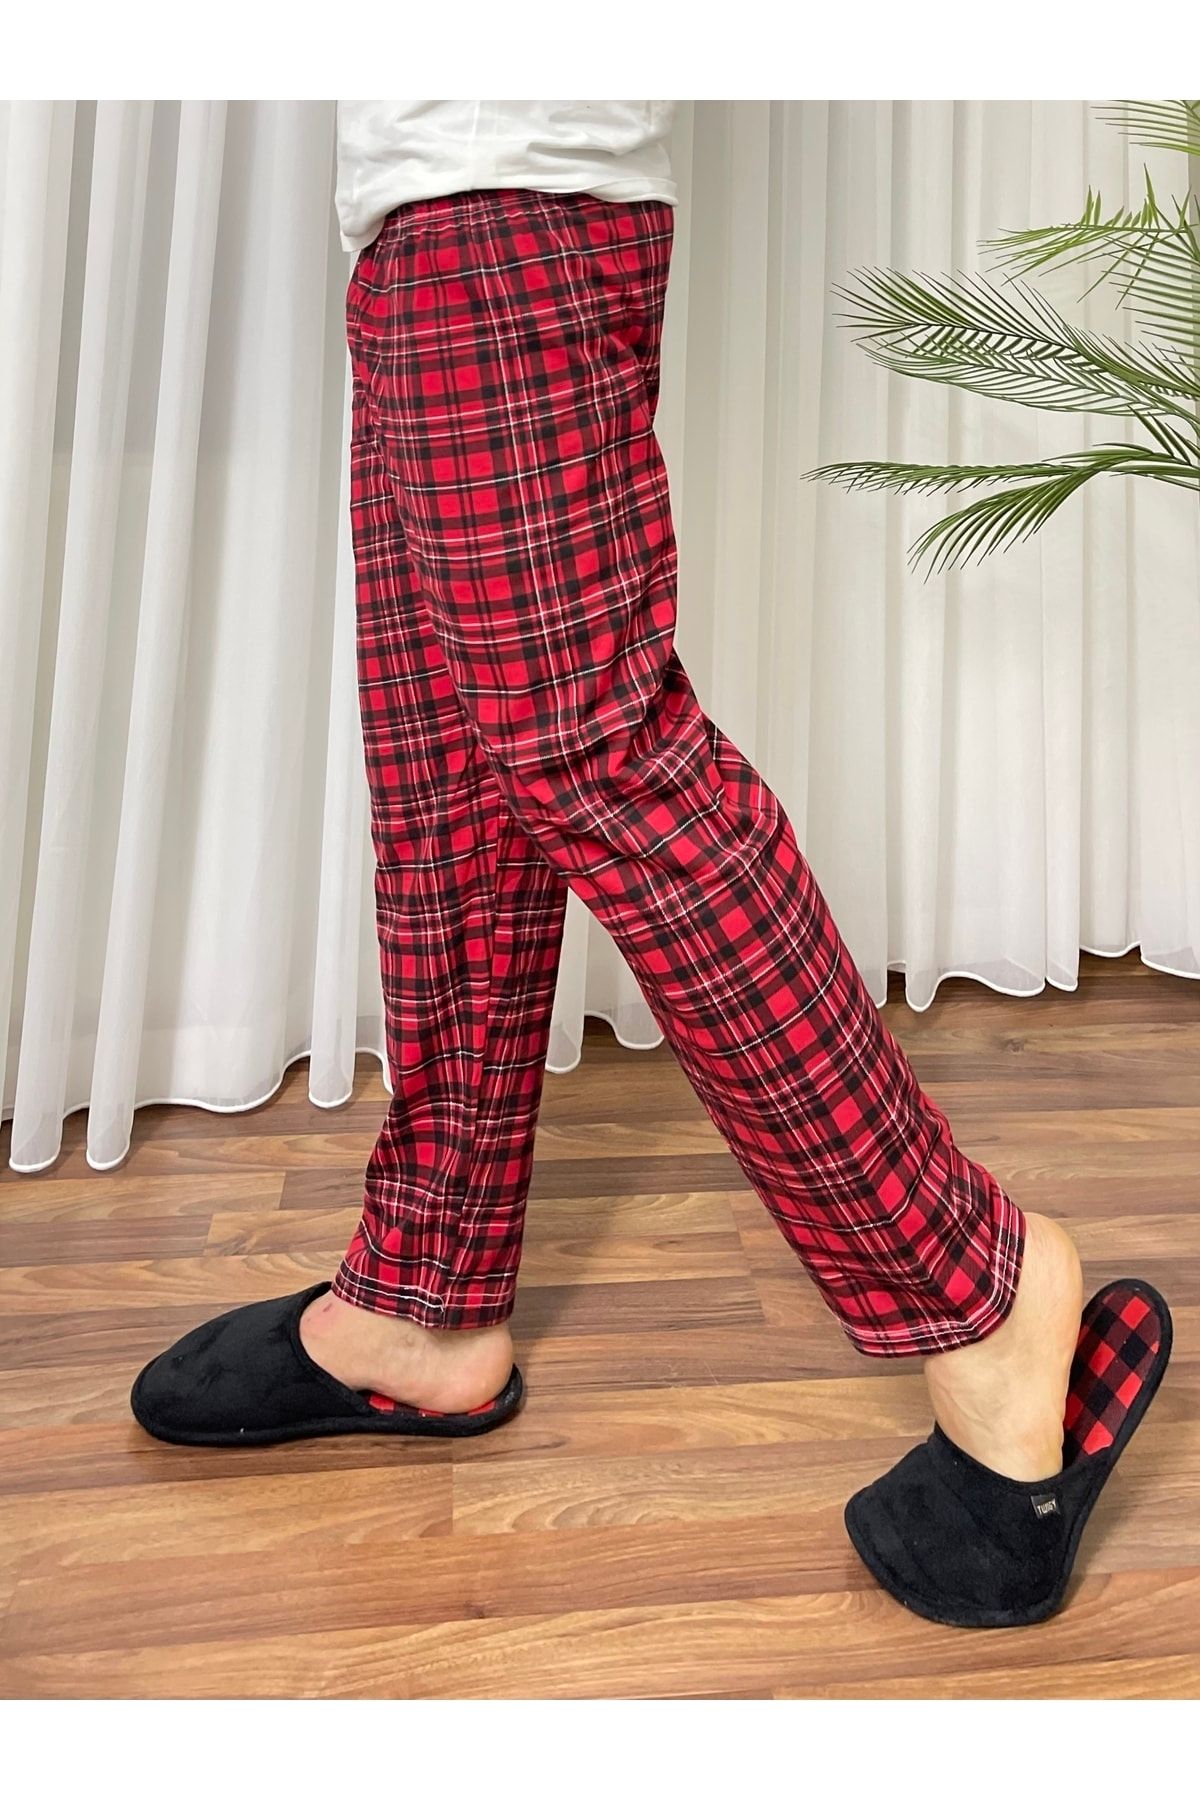 Betimoda Erkek Pamuklu Cepsiz Ekose Desenli Pijama Altı Eşofman Kırmızı Siyah Kareli